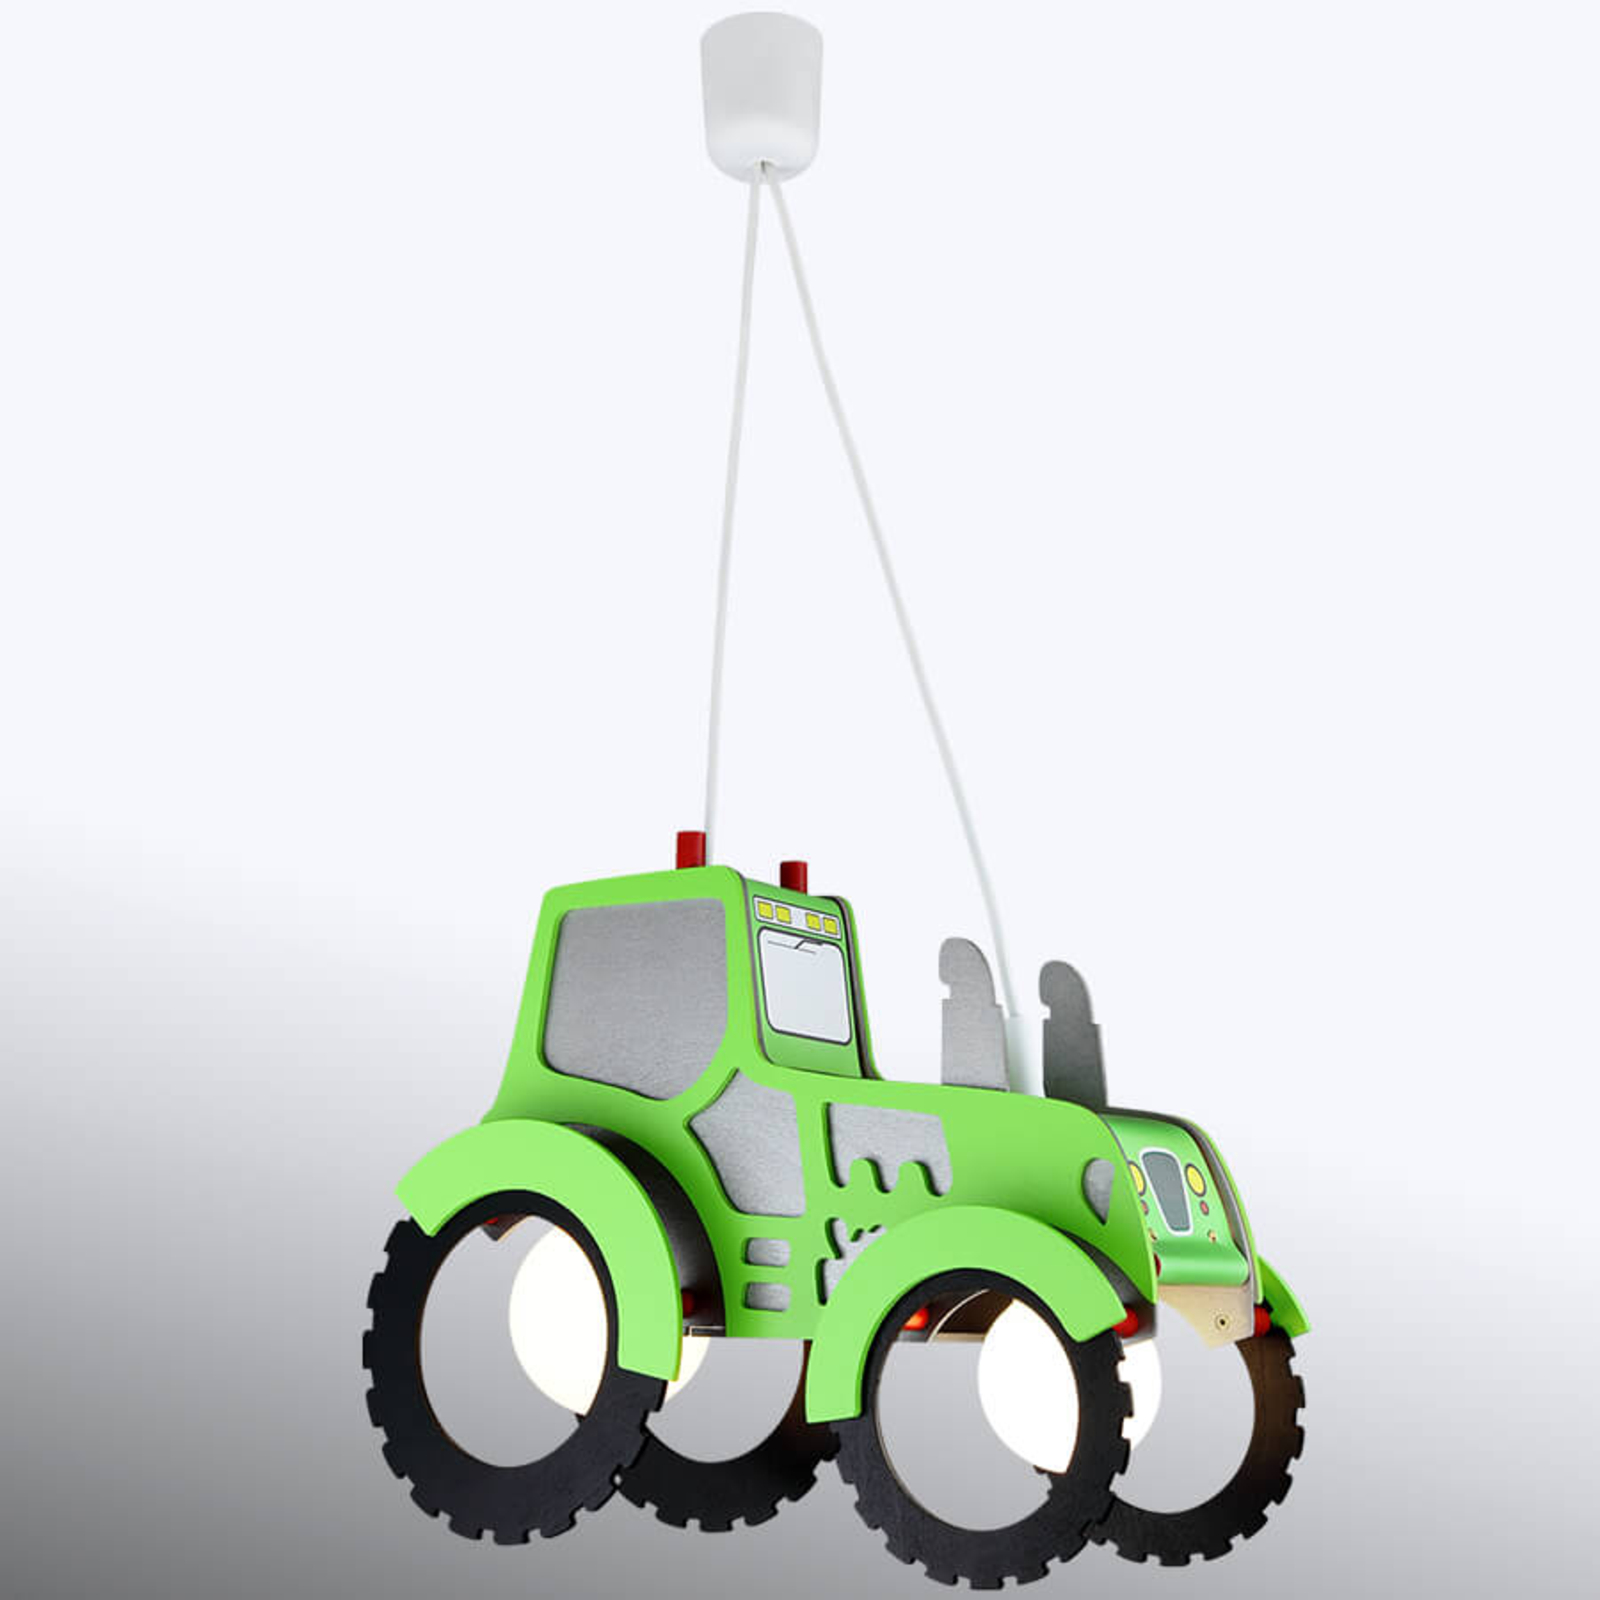 Pendellampa Traktor för barnrummet